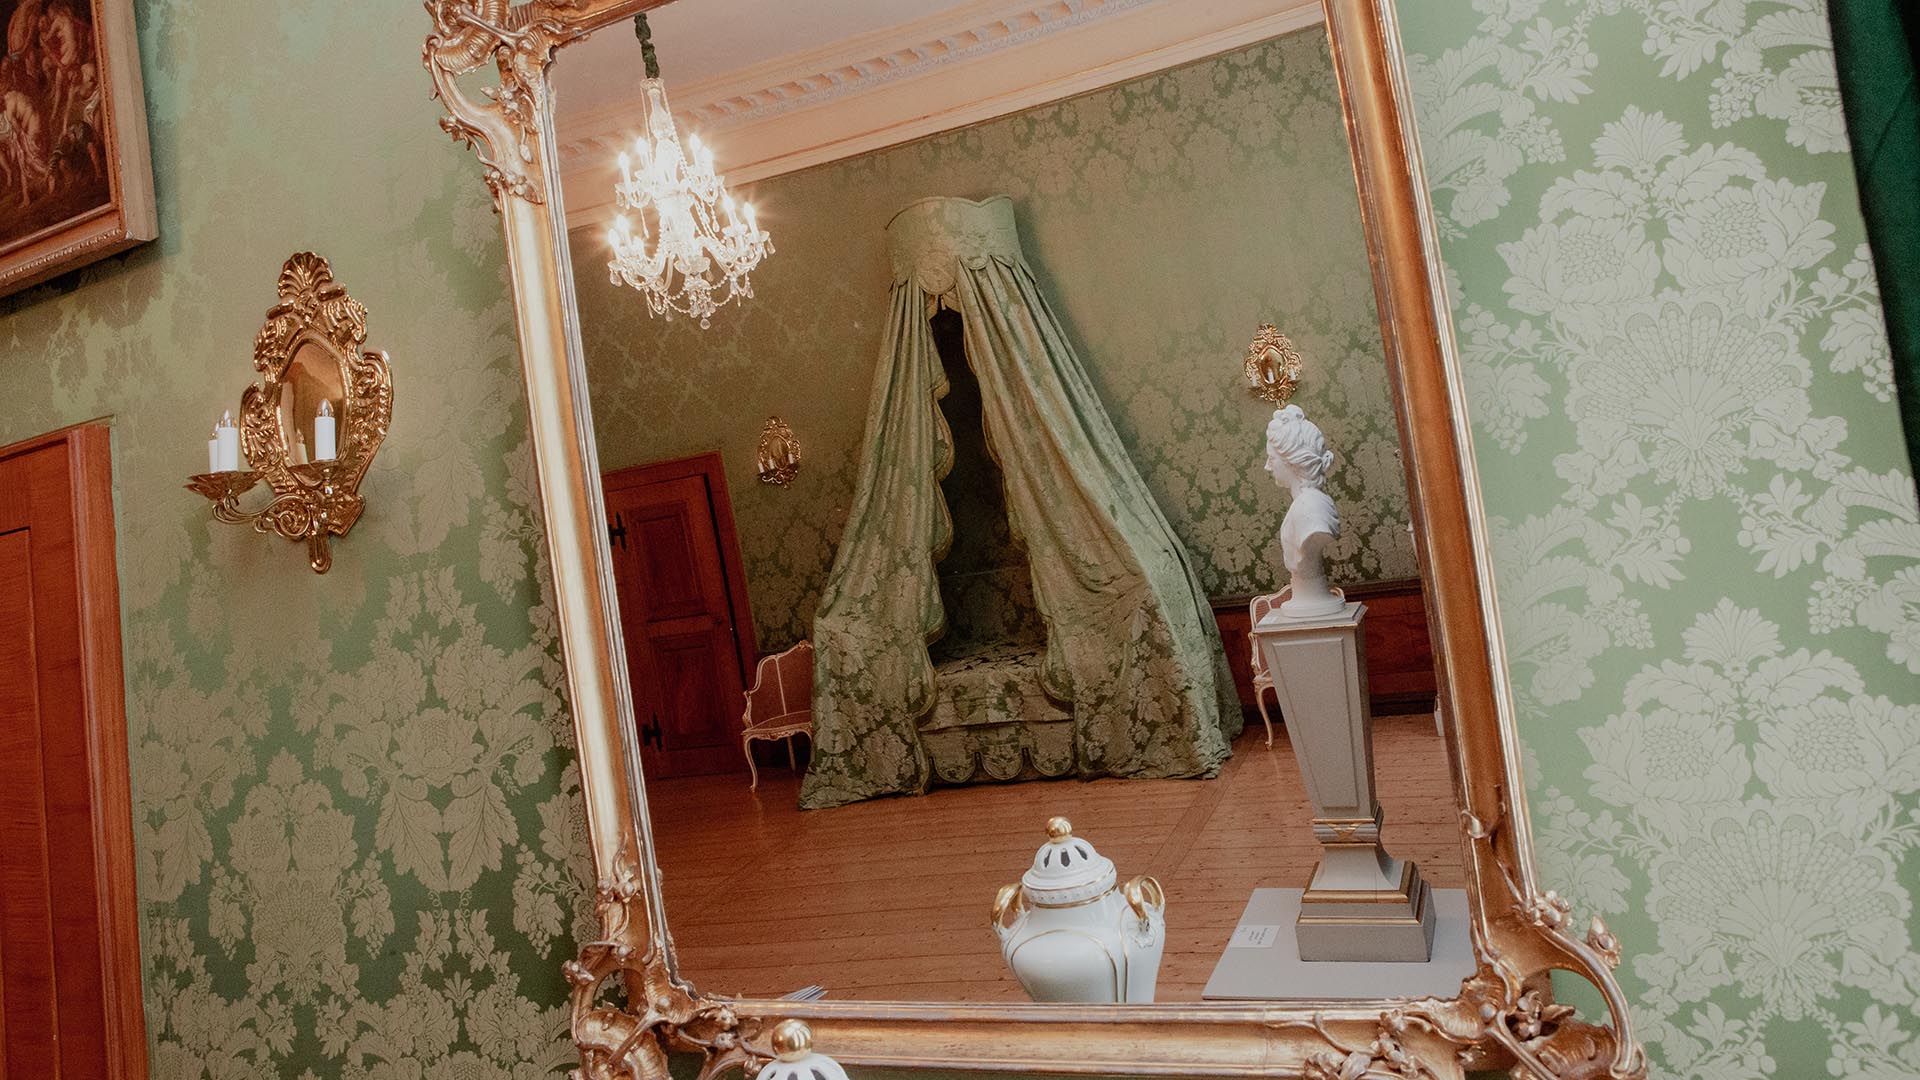 Blick in einen Wandspiegel, darin sieht man das Geburtszimmer der Herzogin Anna Amalia mit einem Himmelbet, einer Büste, Kronleuchter und kleinen Dekogegenständen